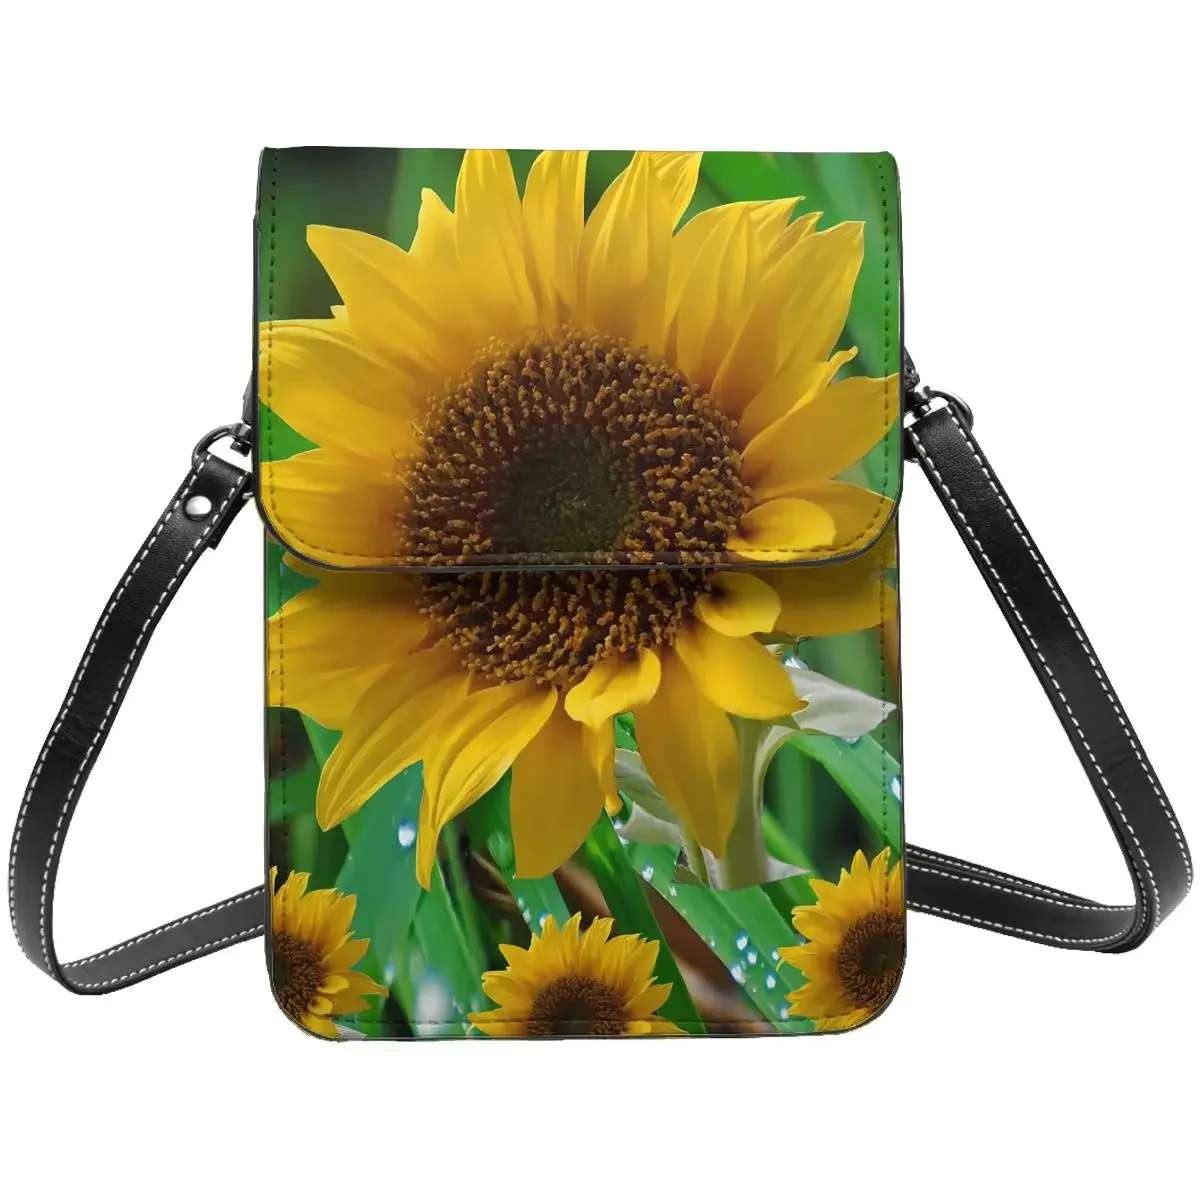 Сумка через плечо Nature Sunflower с принтом зеленых листьев, винтажная кожаная уличная сумка для мобильного телефона, женские объемные сумки